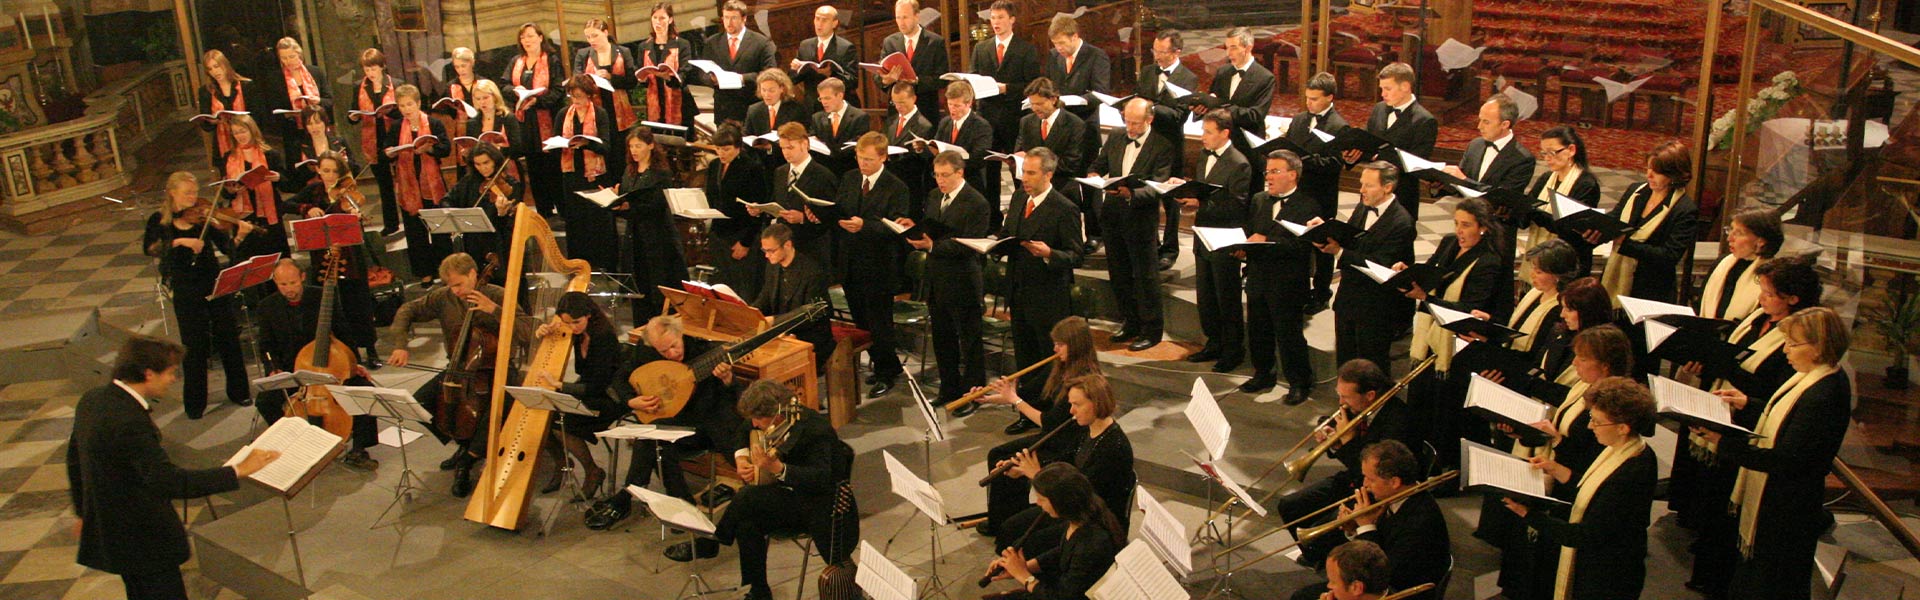 Marini Consort Innsbruck - spielt ein Konzert